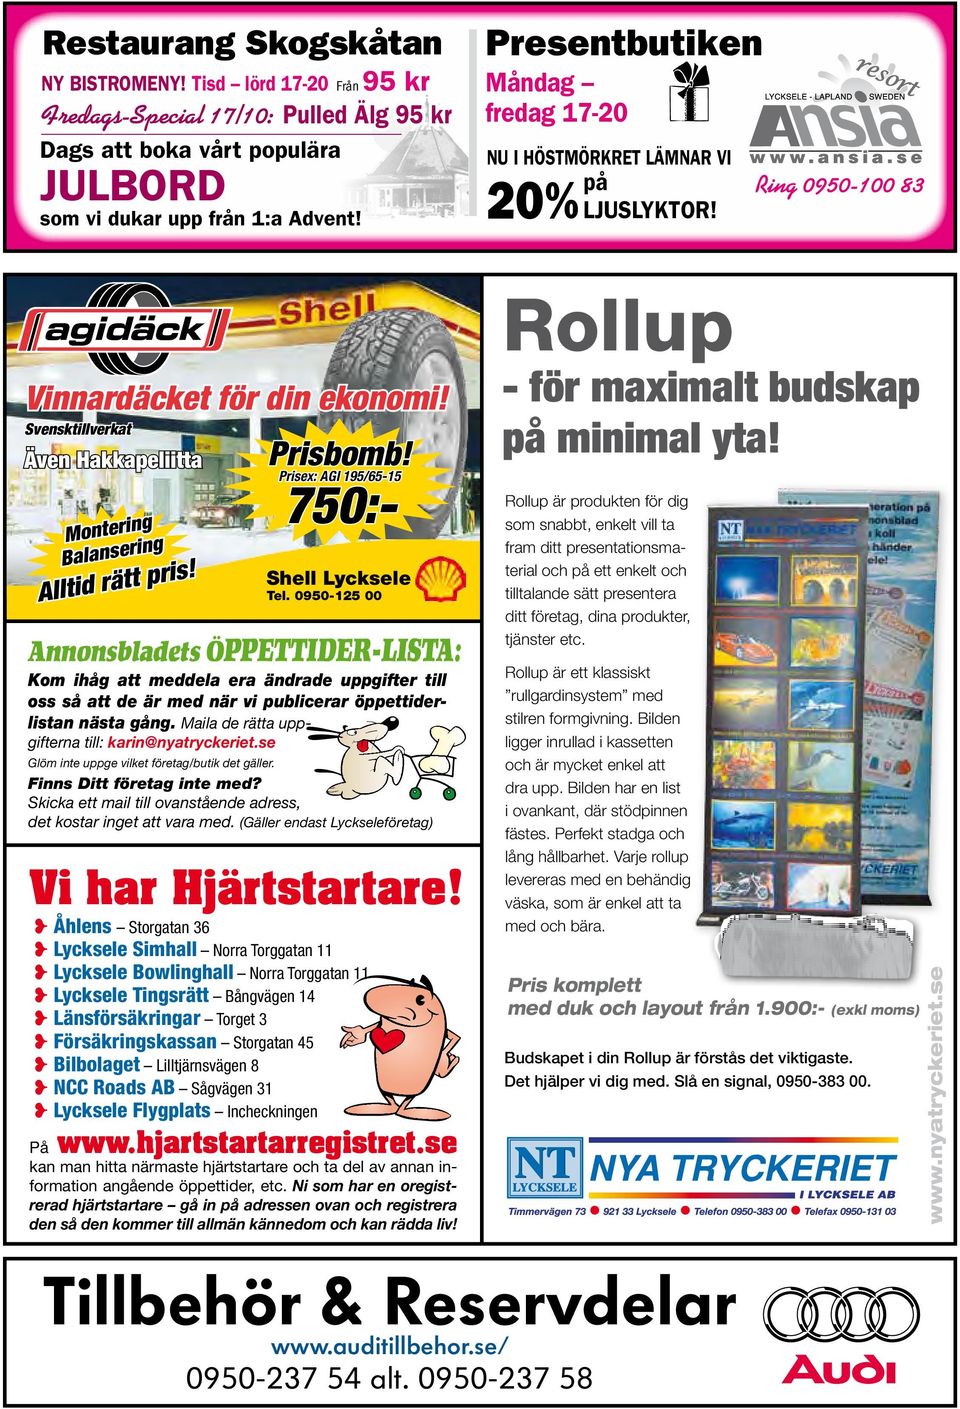 Svensktillverkat Även Hakkapeliitta Montering Balansering Alltid rätt pris! Prisbomb! Prisex: AGI 195/65-15 750:- Shell Lycksele Tel.